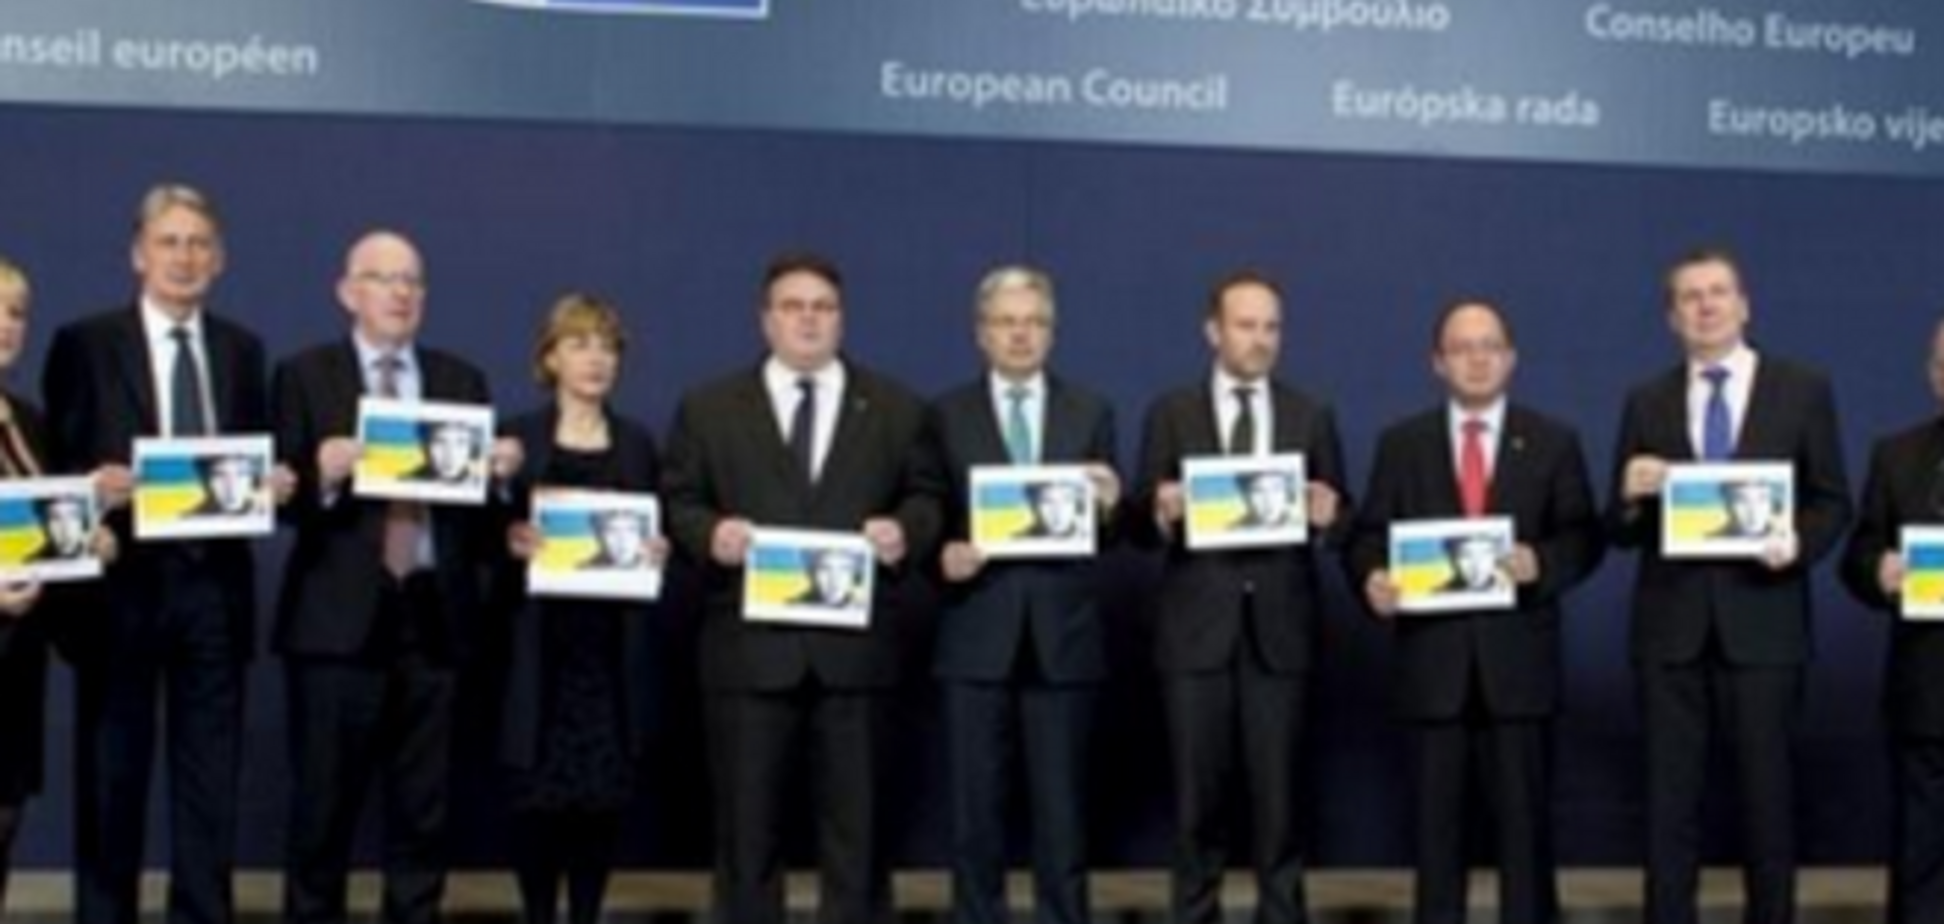 МИД Литвы потребовал от России немедленного освобождения Савченко и всех пленных украинцев